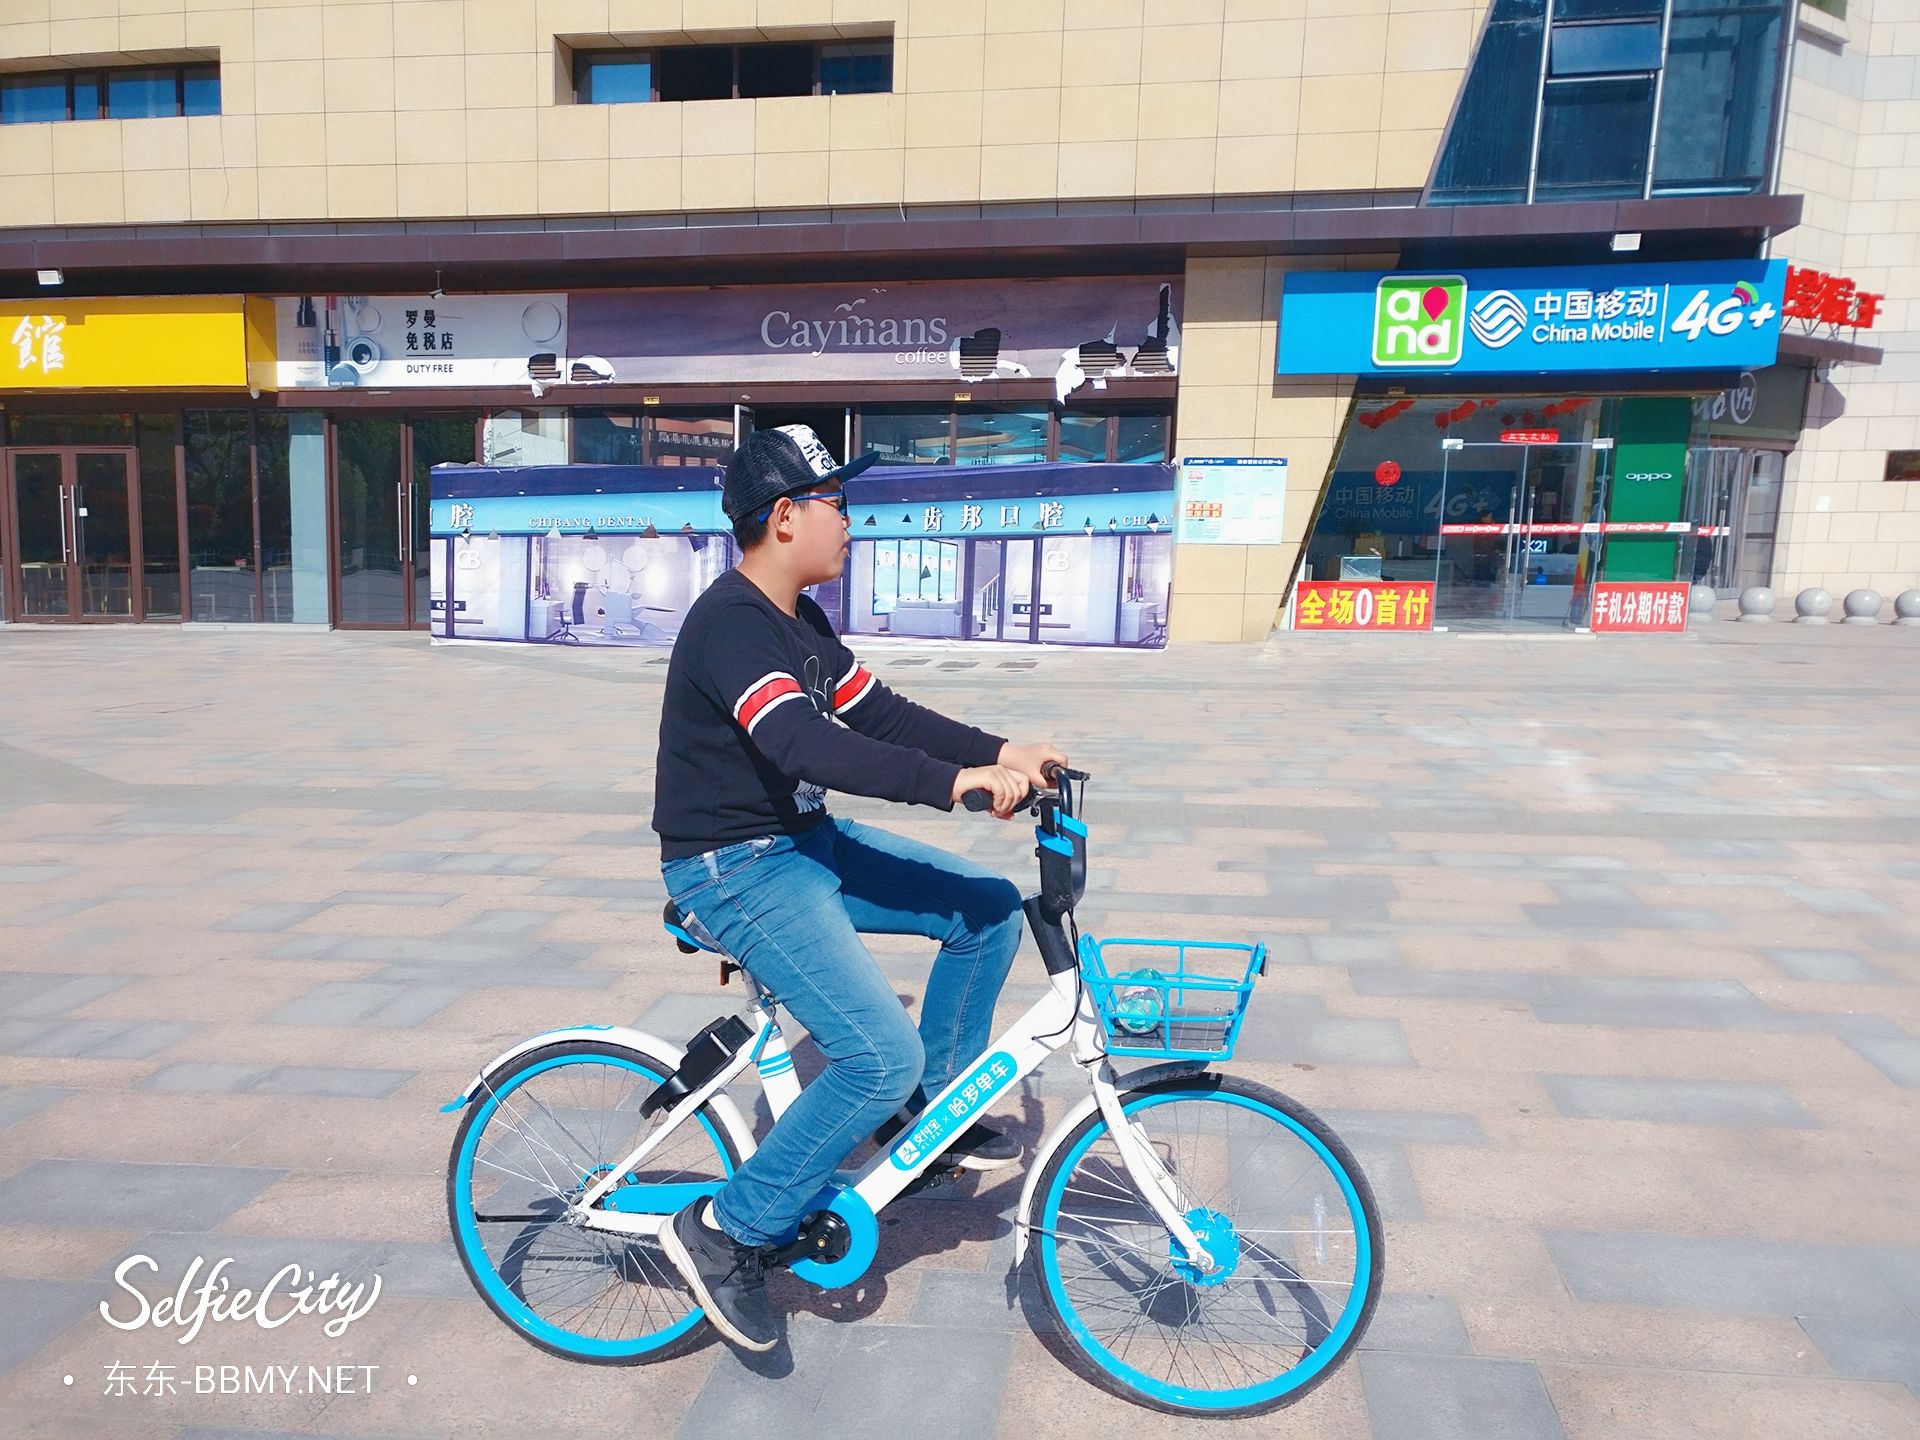 金东浩成长日记练习单车技术照片SelfieCity_20210922235237_org.jpg